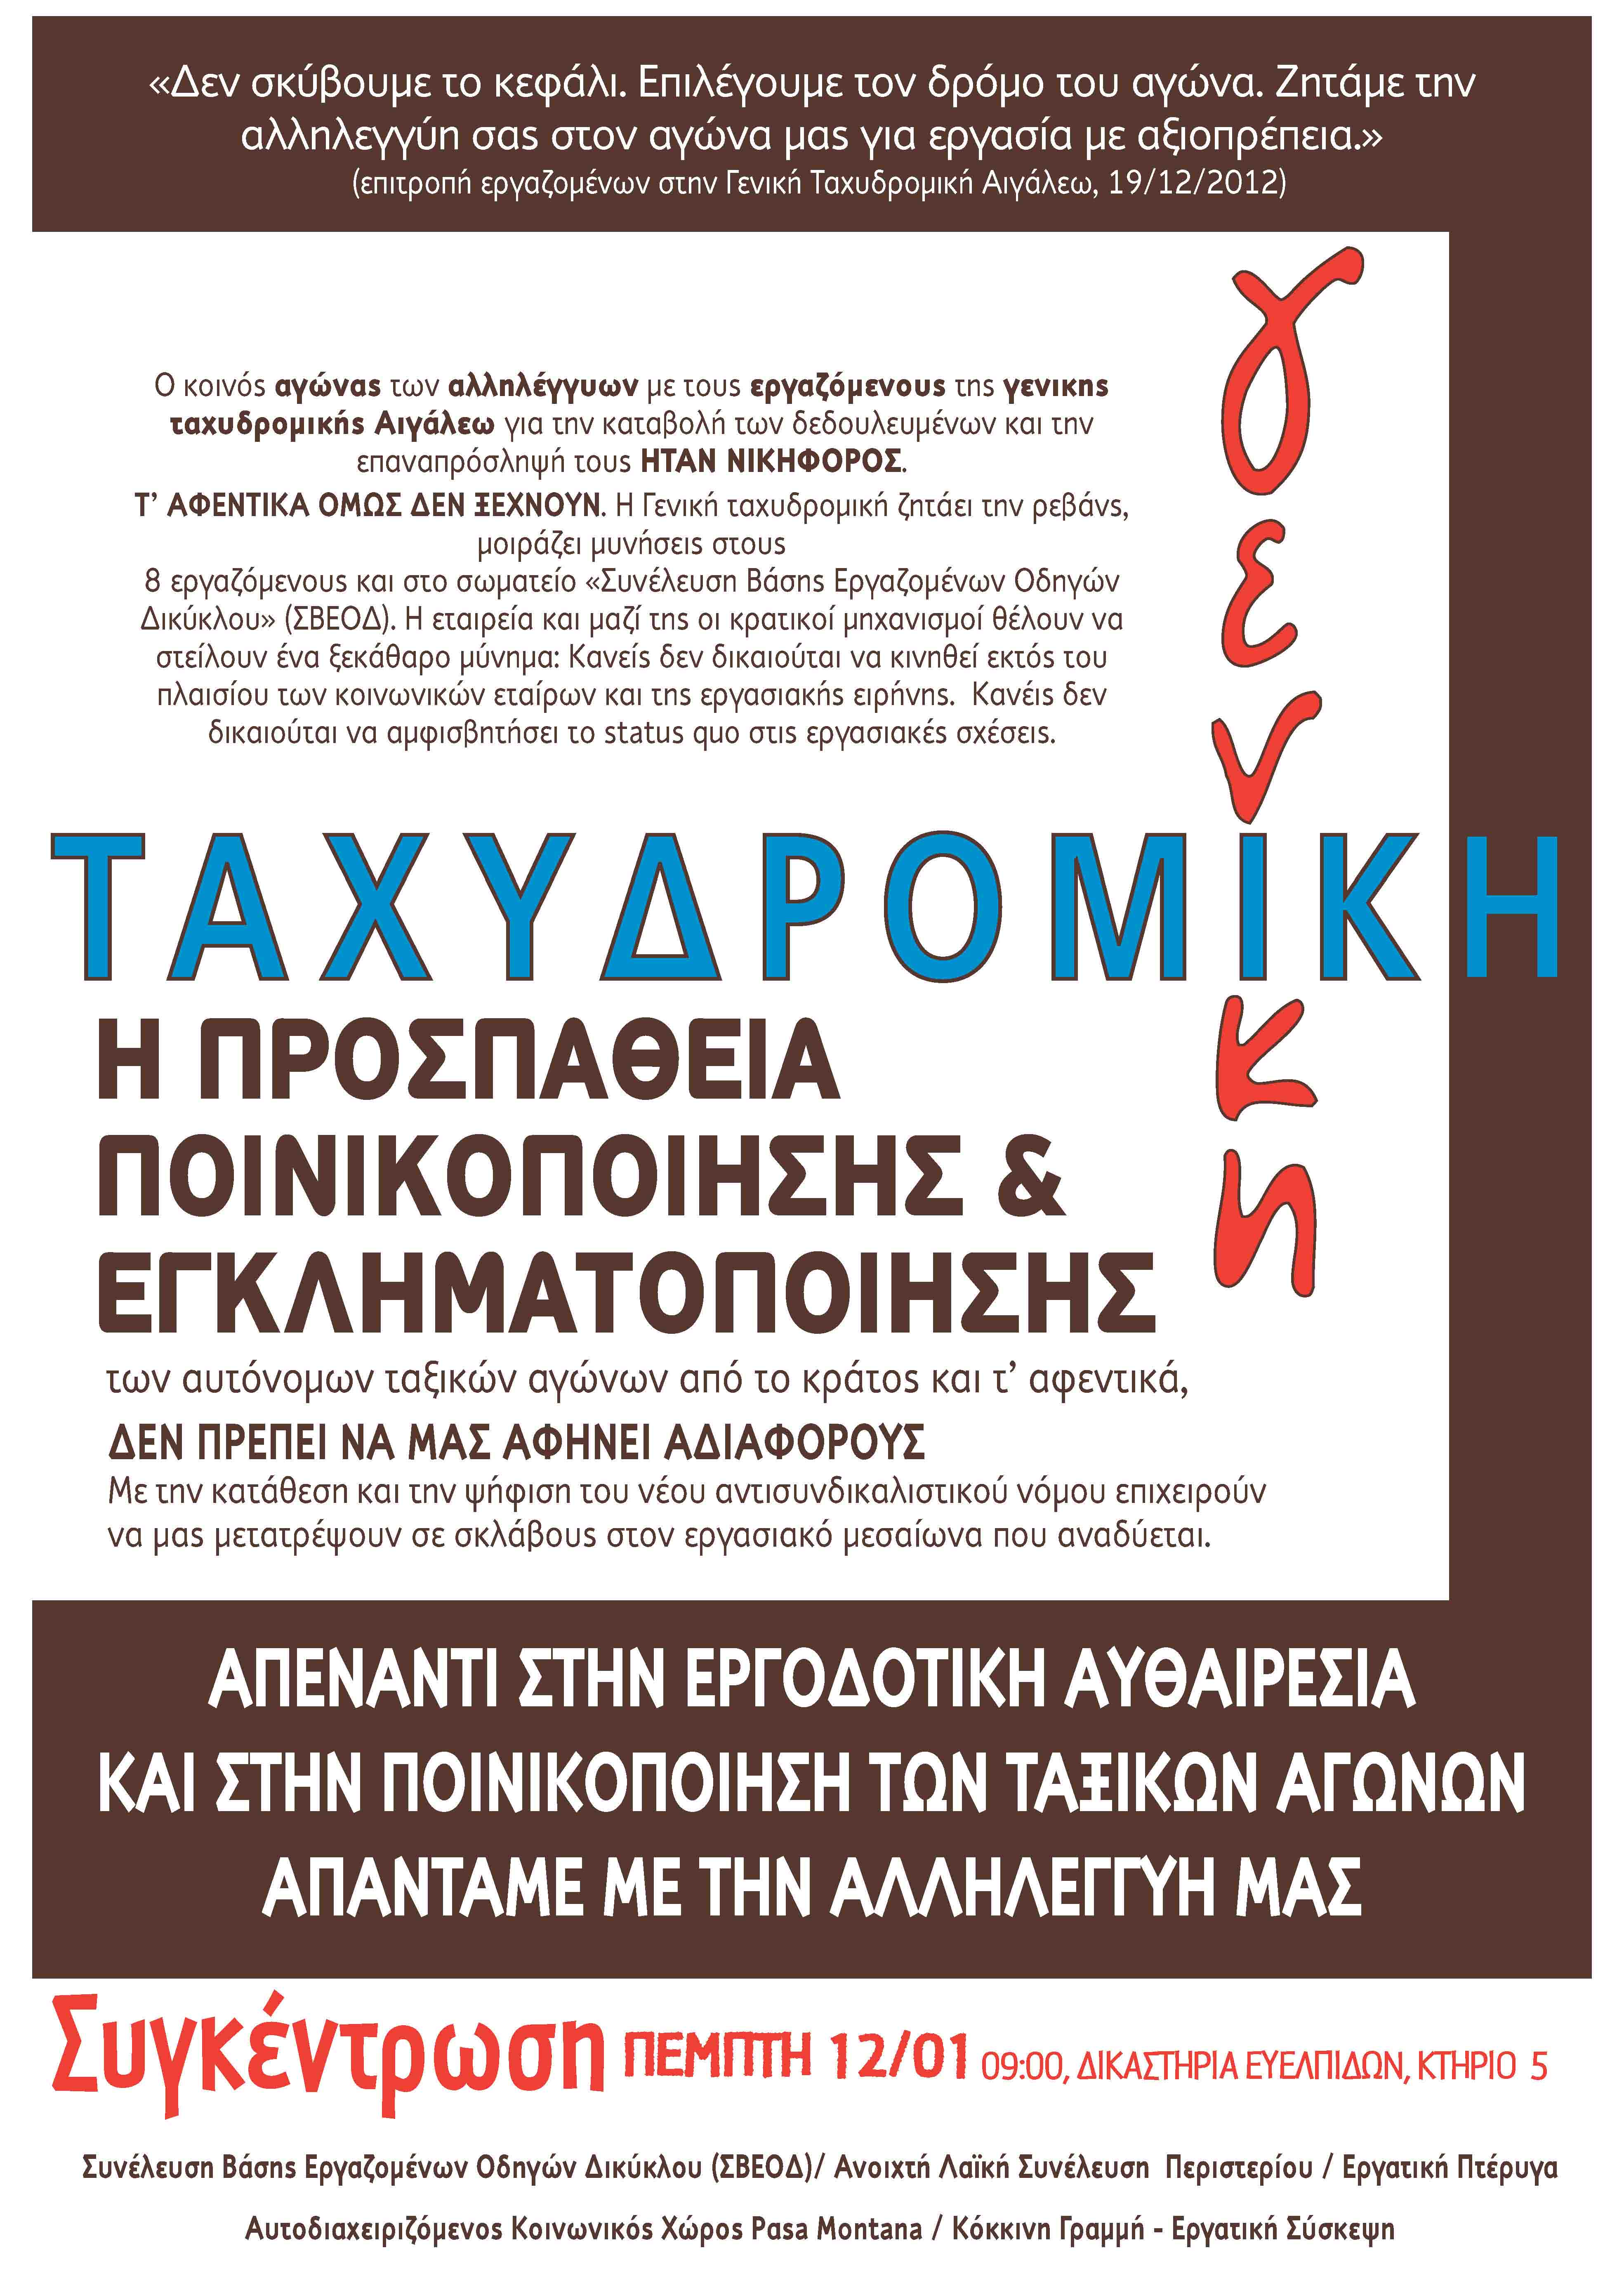 Αθήνα: Συγκέντρωση αλληλεγγύης στους εργαζόμενους της Γενικής Ταχυδρομικής & στο σωματείο ΣΒΕΟΔ [Πέμπτη 12/01, 09:00]